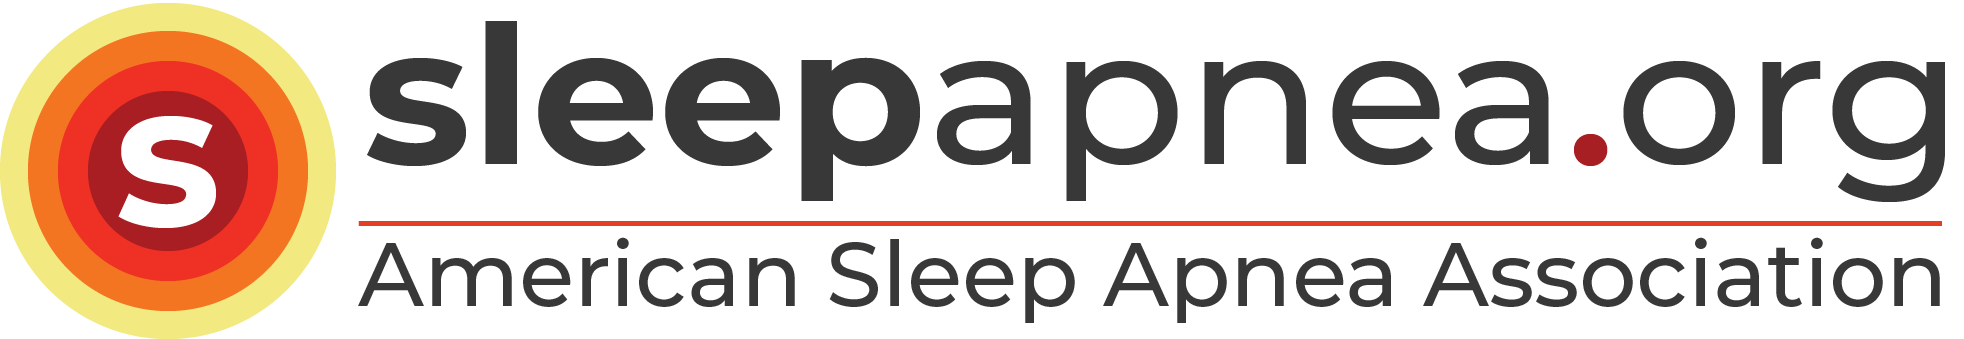 www.sleepapnea.org